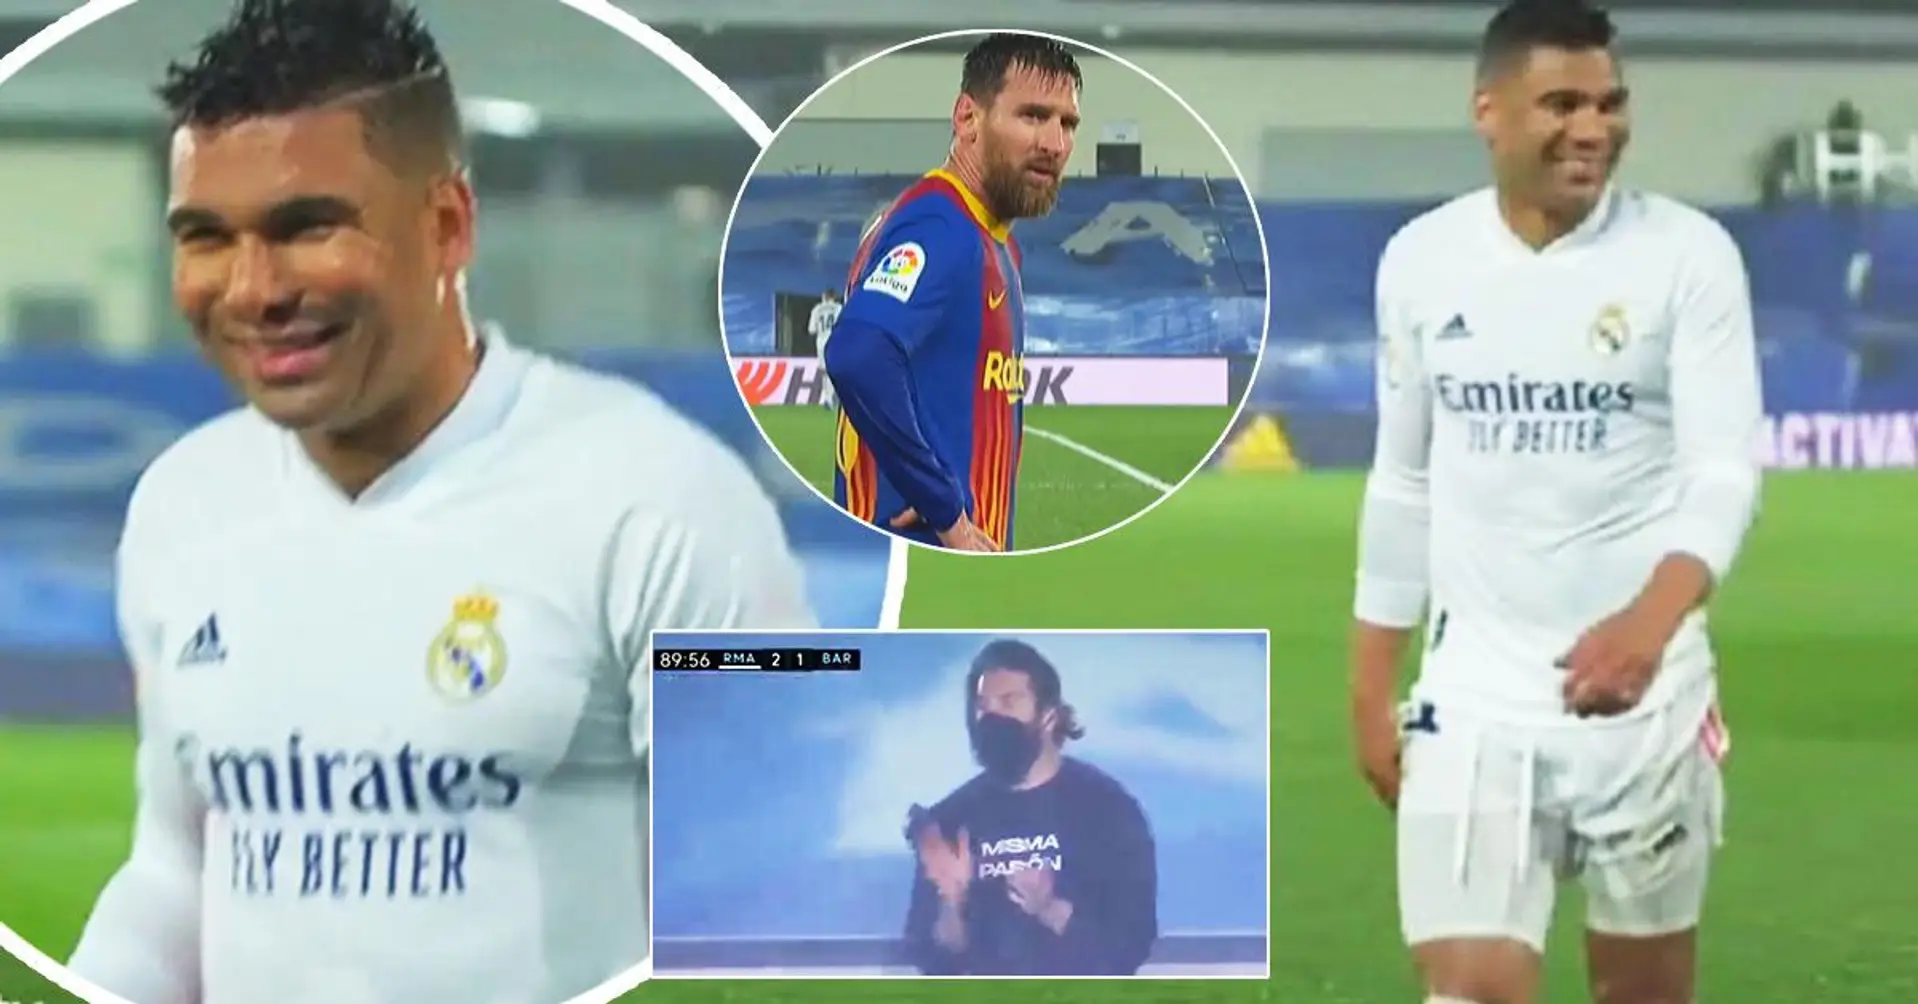 'La mia capra': i fan notano che Casemiro 'trolla' i giocatori del Barca durante El Clasico, gli screenshot diventano virali